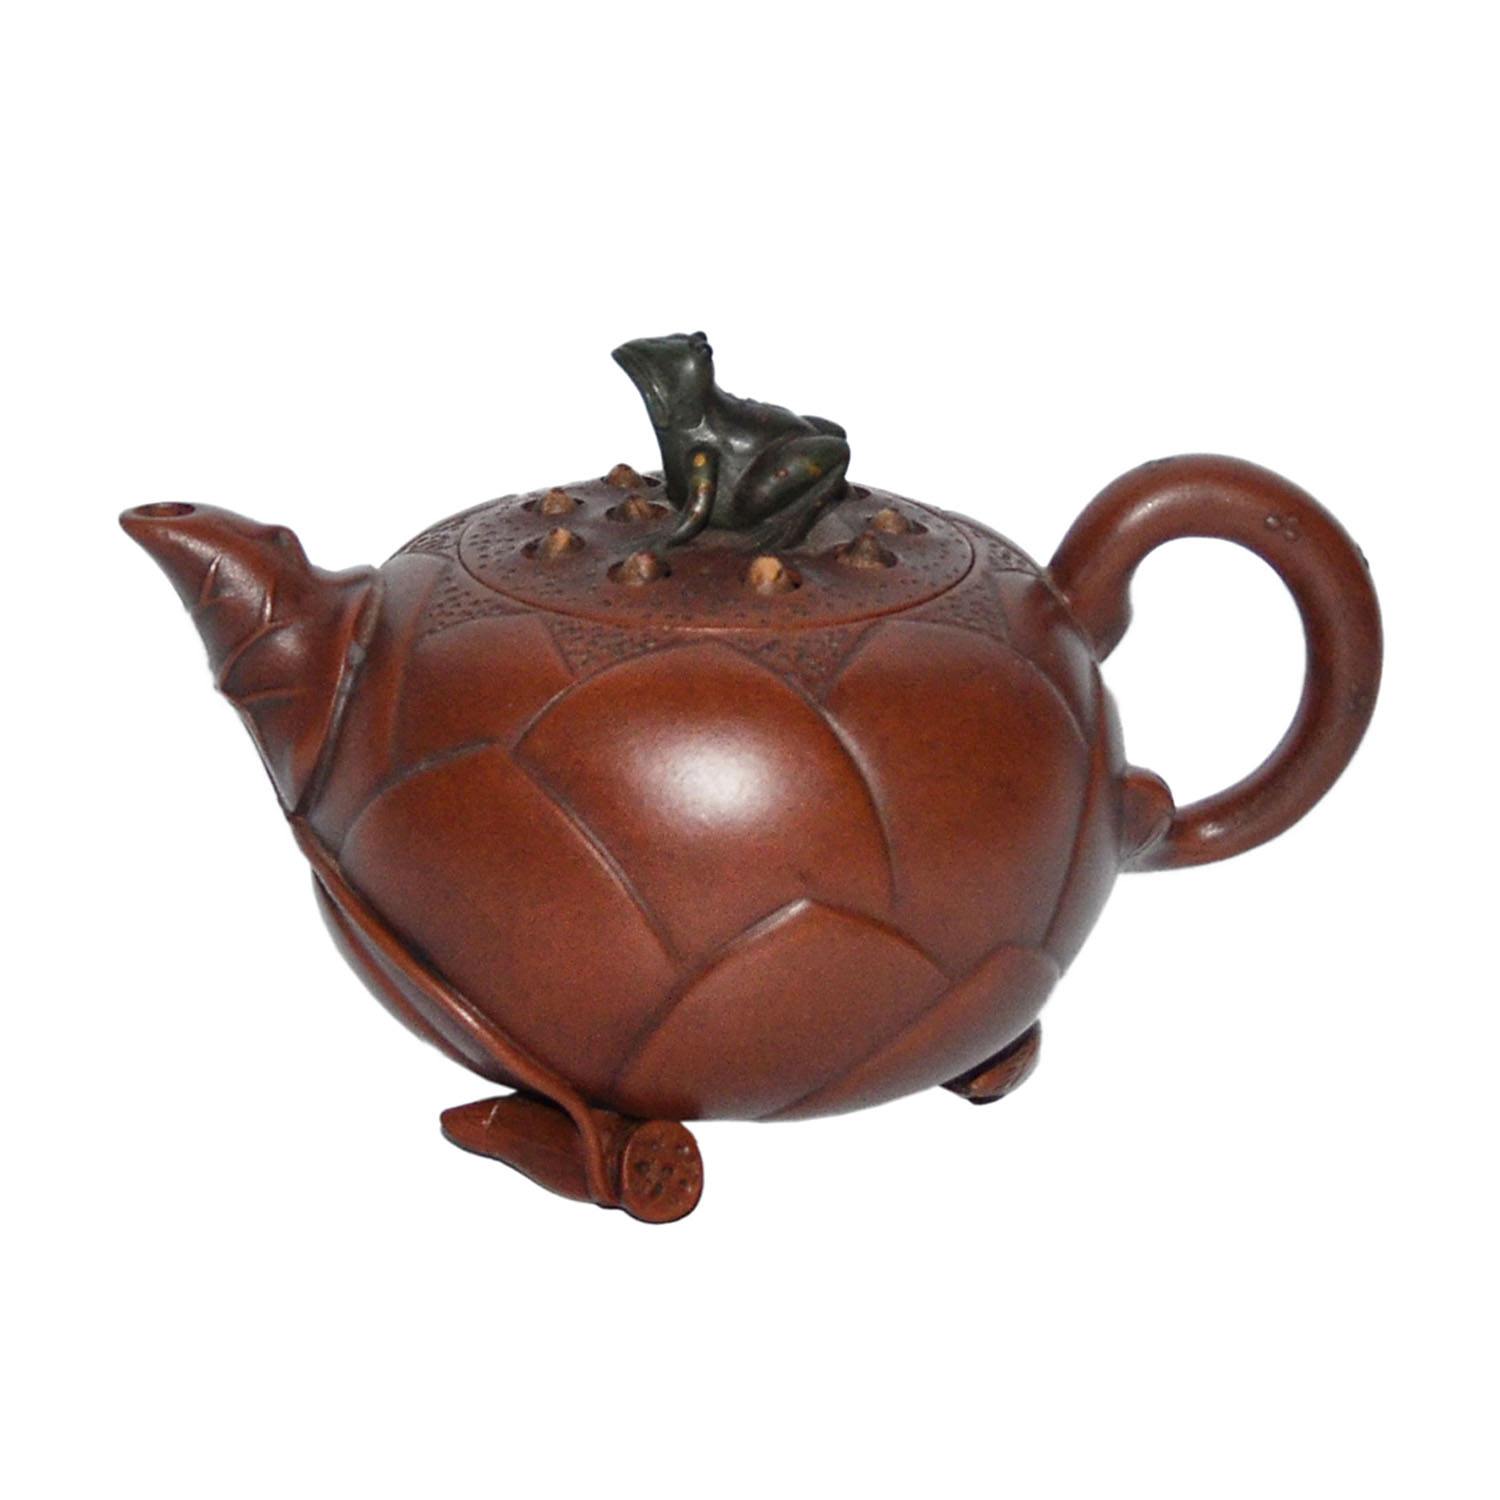 蓮蓬青蛙鈕紫砂壺 (蔣蓉)底款 (蔣蓉)蓋內款 Lotus Zisha Teapot Carved with Petal and Molded Pod with Frog as Finial